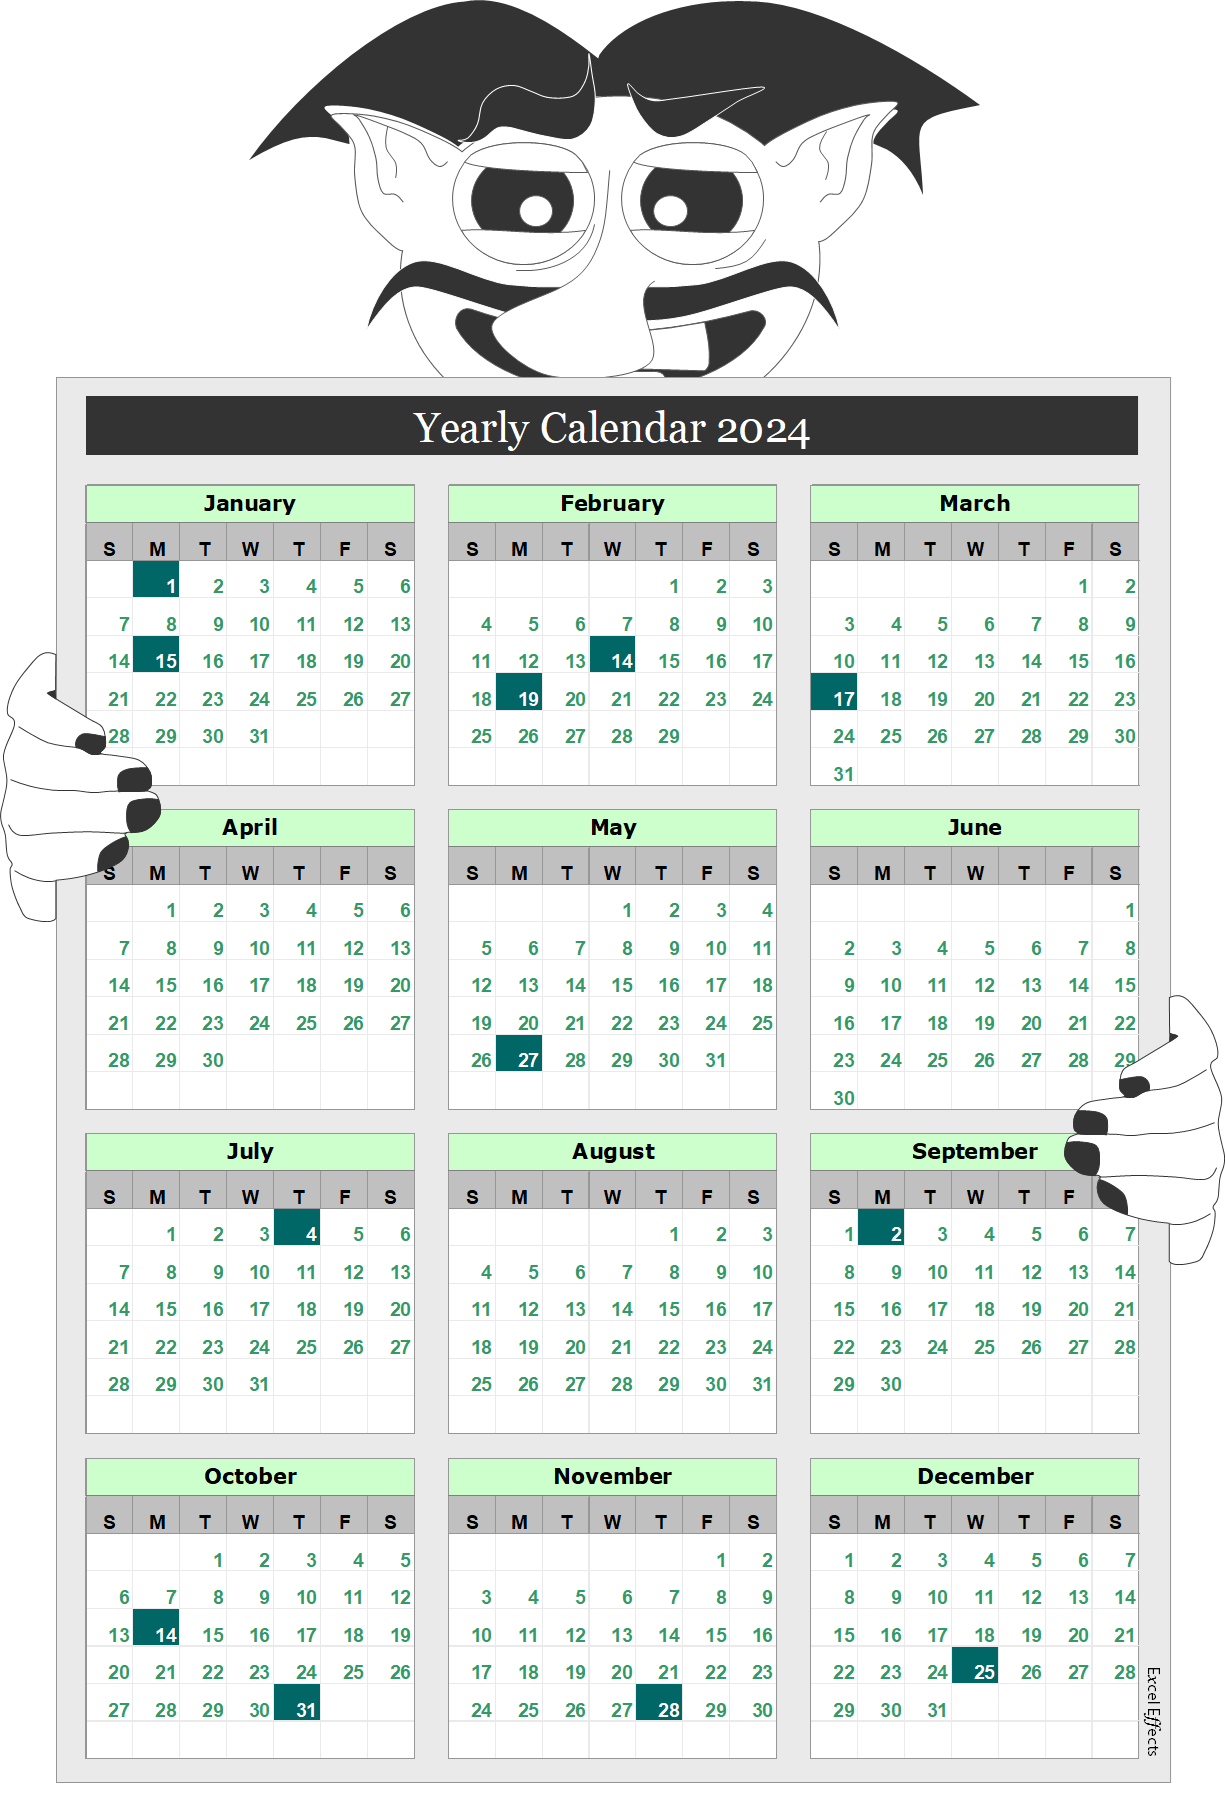 Calendar 2 - Smart troll calendar - Excel Effects